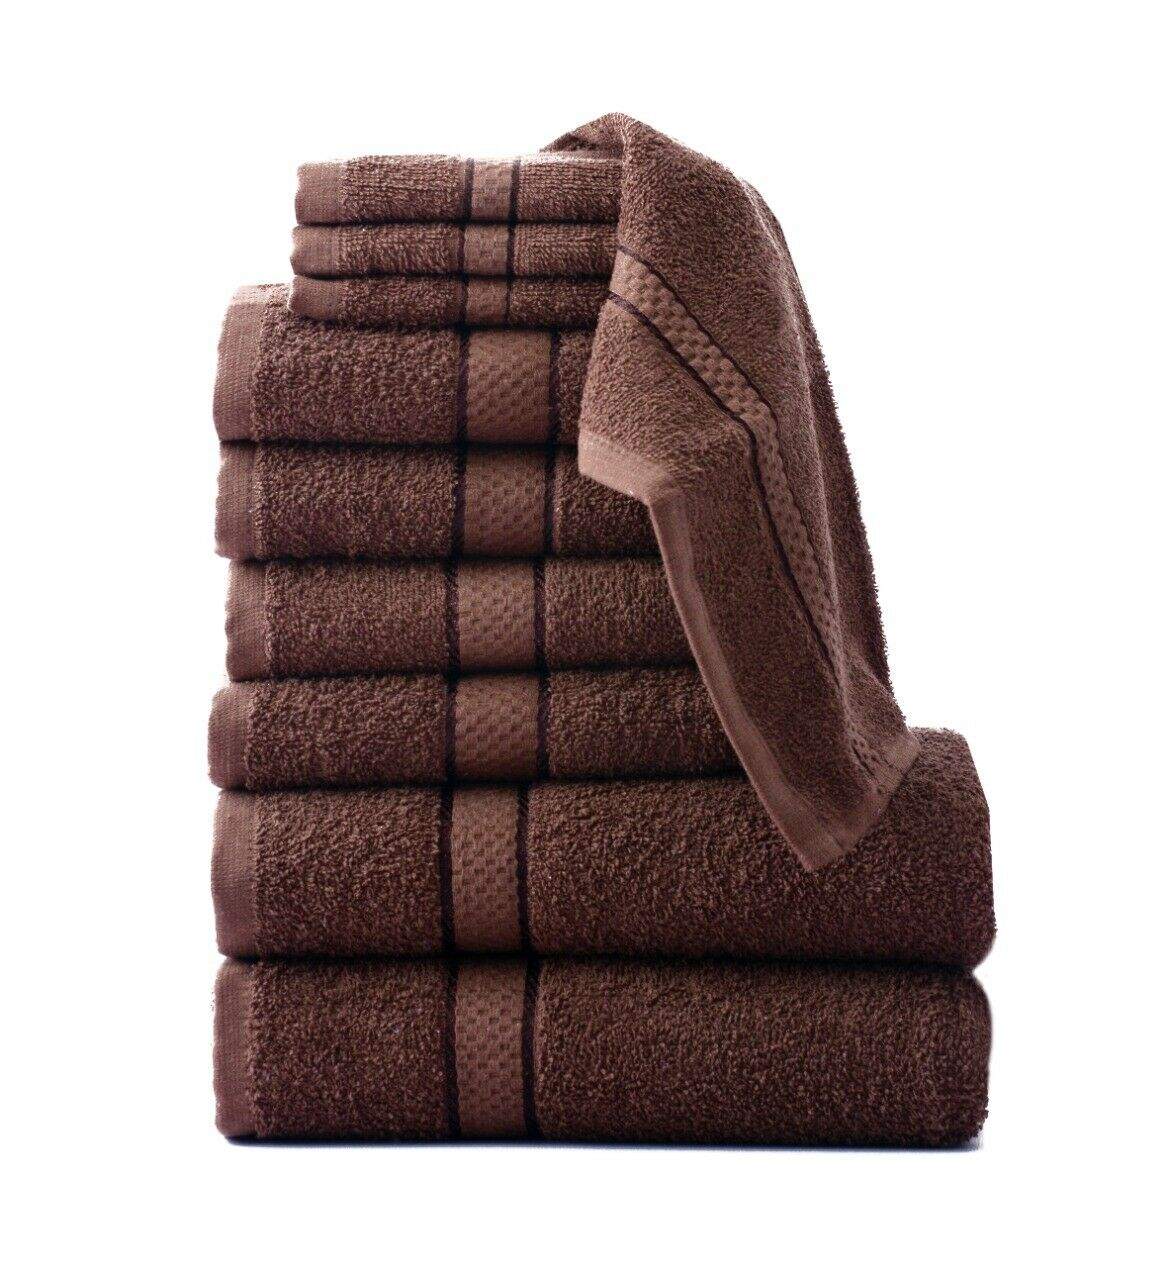 GIFT SET 10 PCS TOWEL BALE SET 100% COTTON TOWEL SETS HAND BATH & FACE TOWELS Bed and Bath Linen